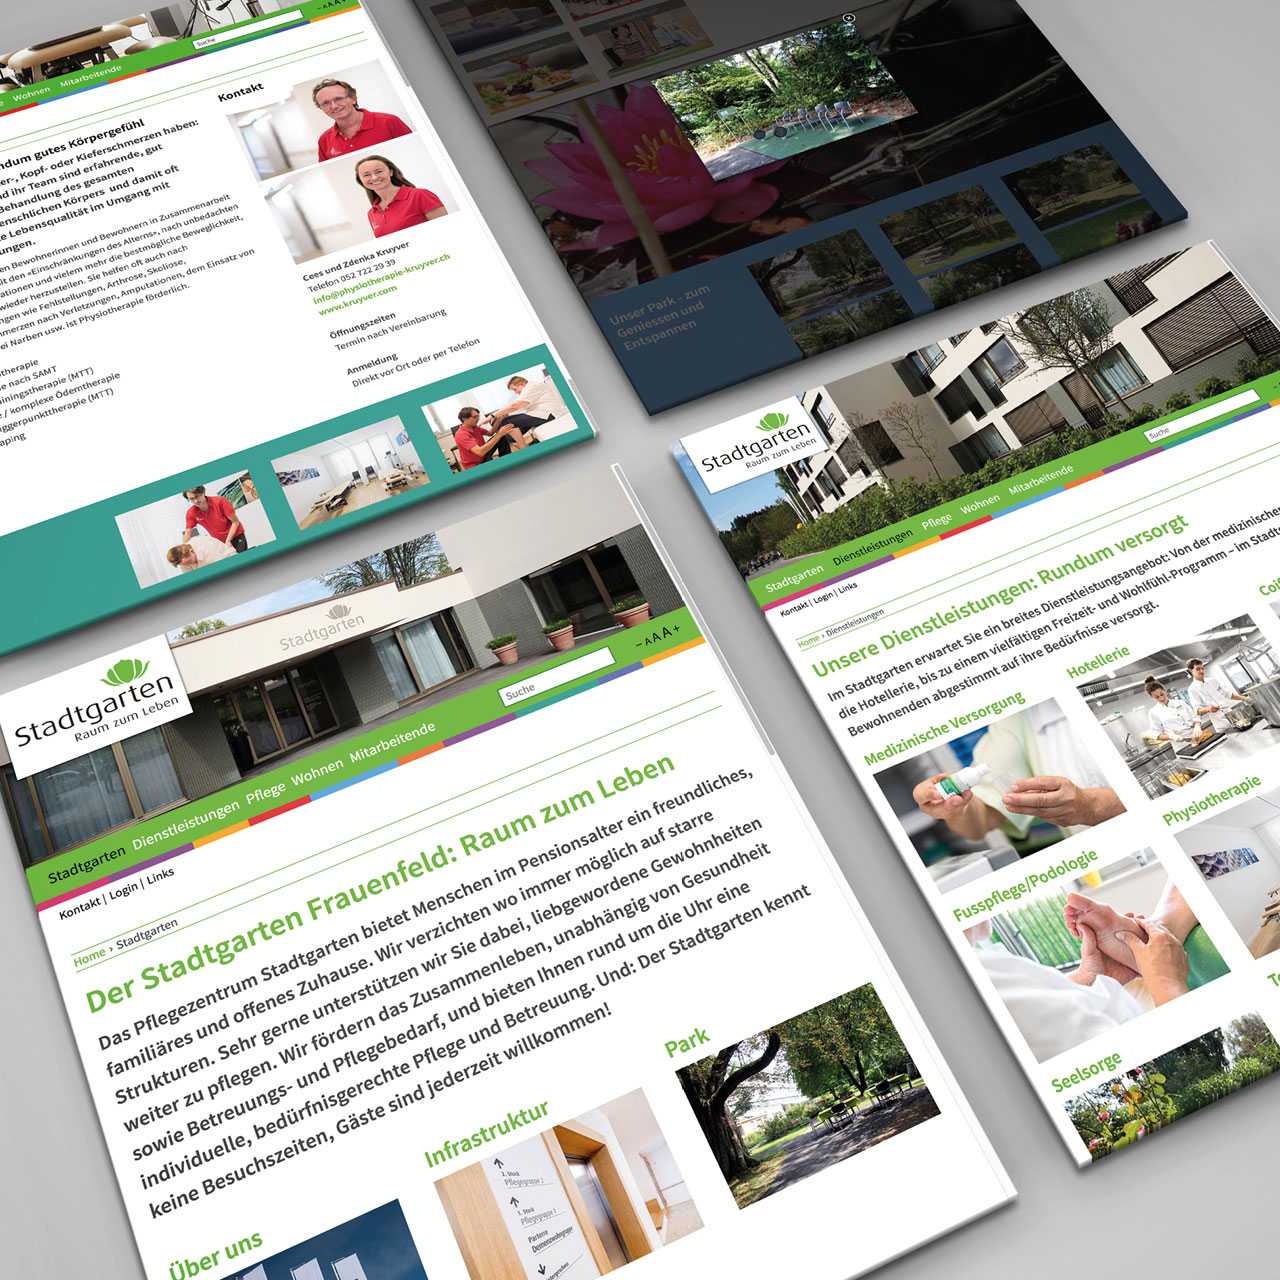 Pflegezentrum Stadtgarten: Corporate Design, Redesign Website